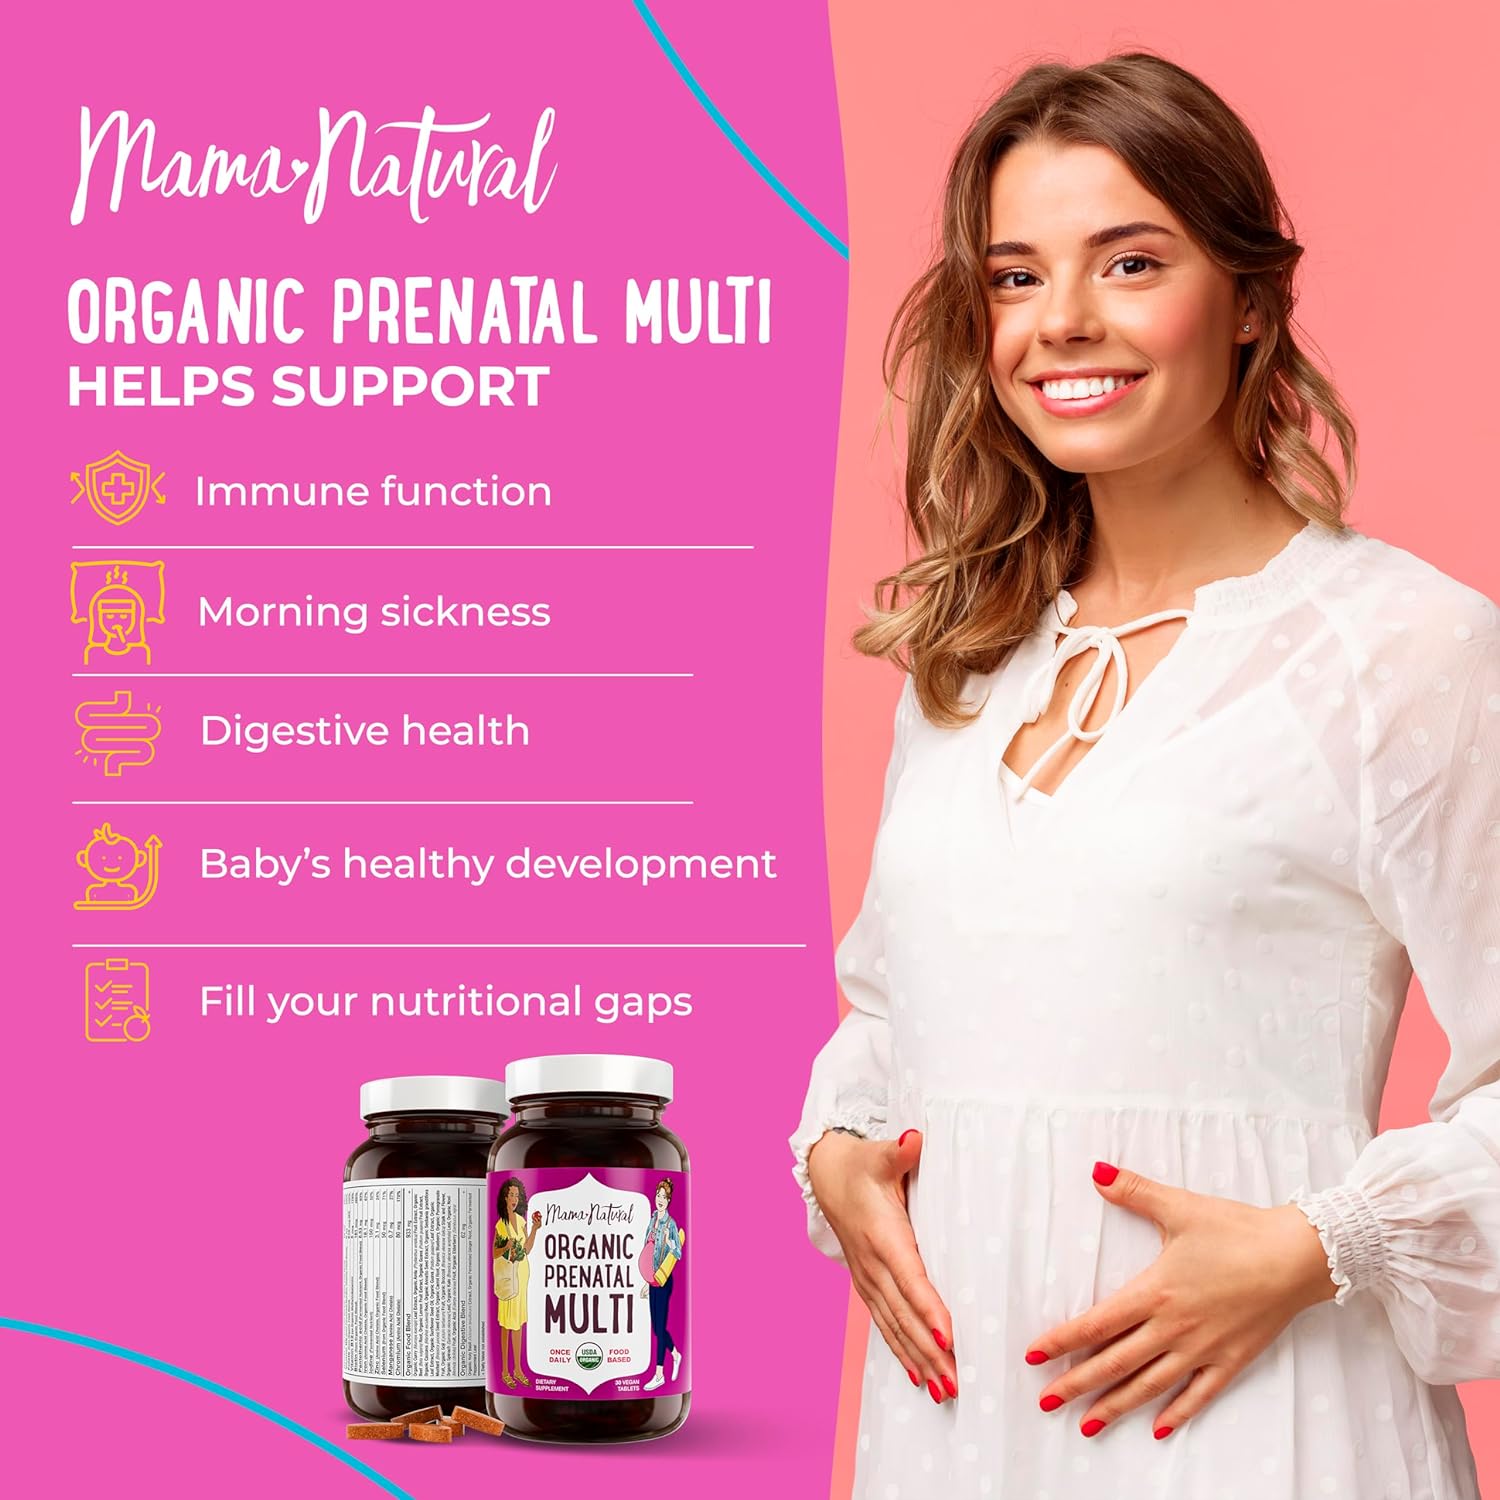 Prenatal Multivitamin by Mama Natural organic supports 